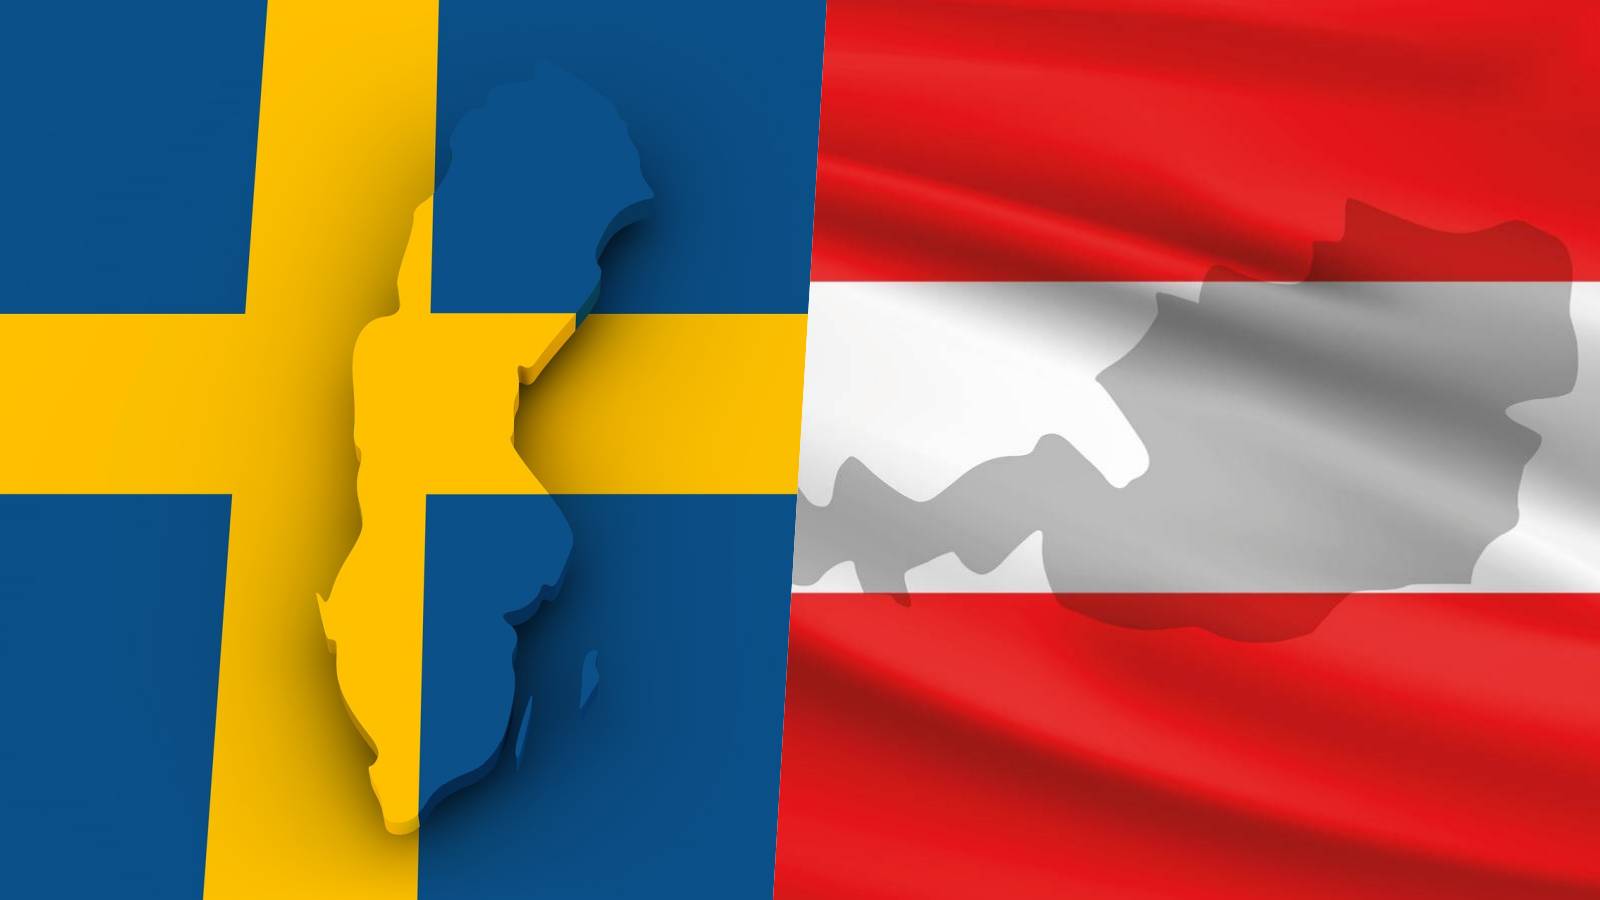 Østrig støttede Italien Sverige Last Minute-meddelelse, der forhindrer Rumæniens Schengen-tiltrædelse